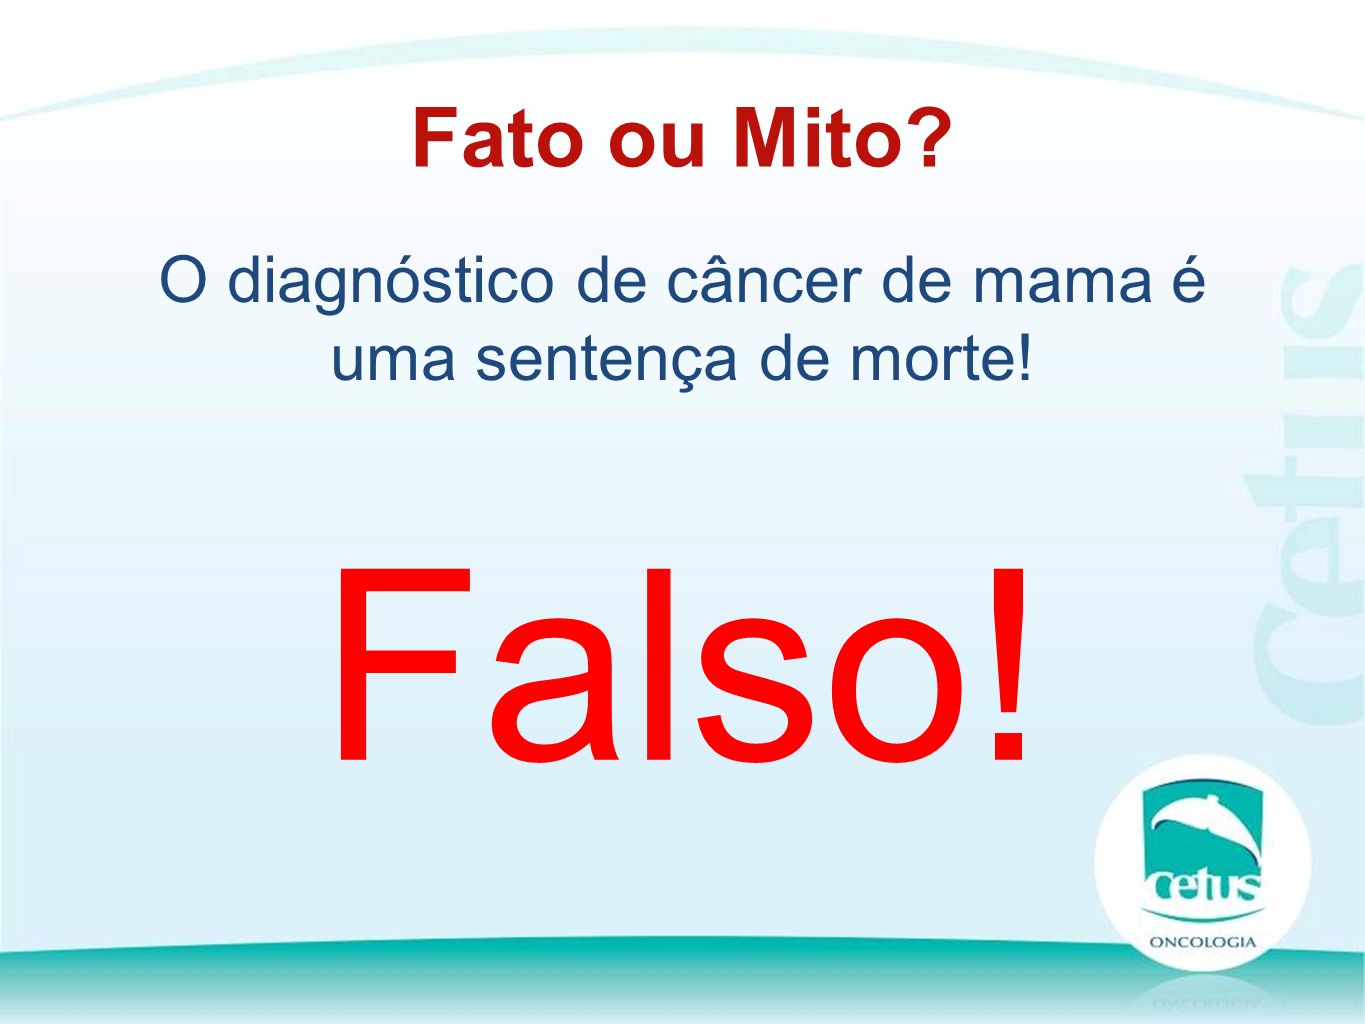 O diagnóstico de câncer de mama é uma sentença de morte! Fato ou Mito Falso!